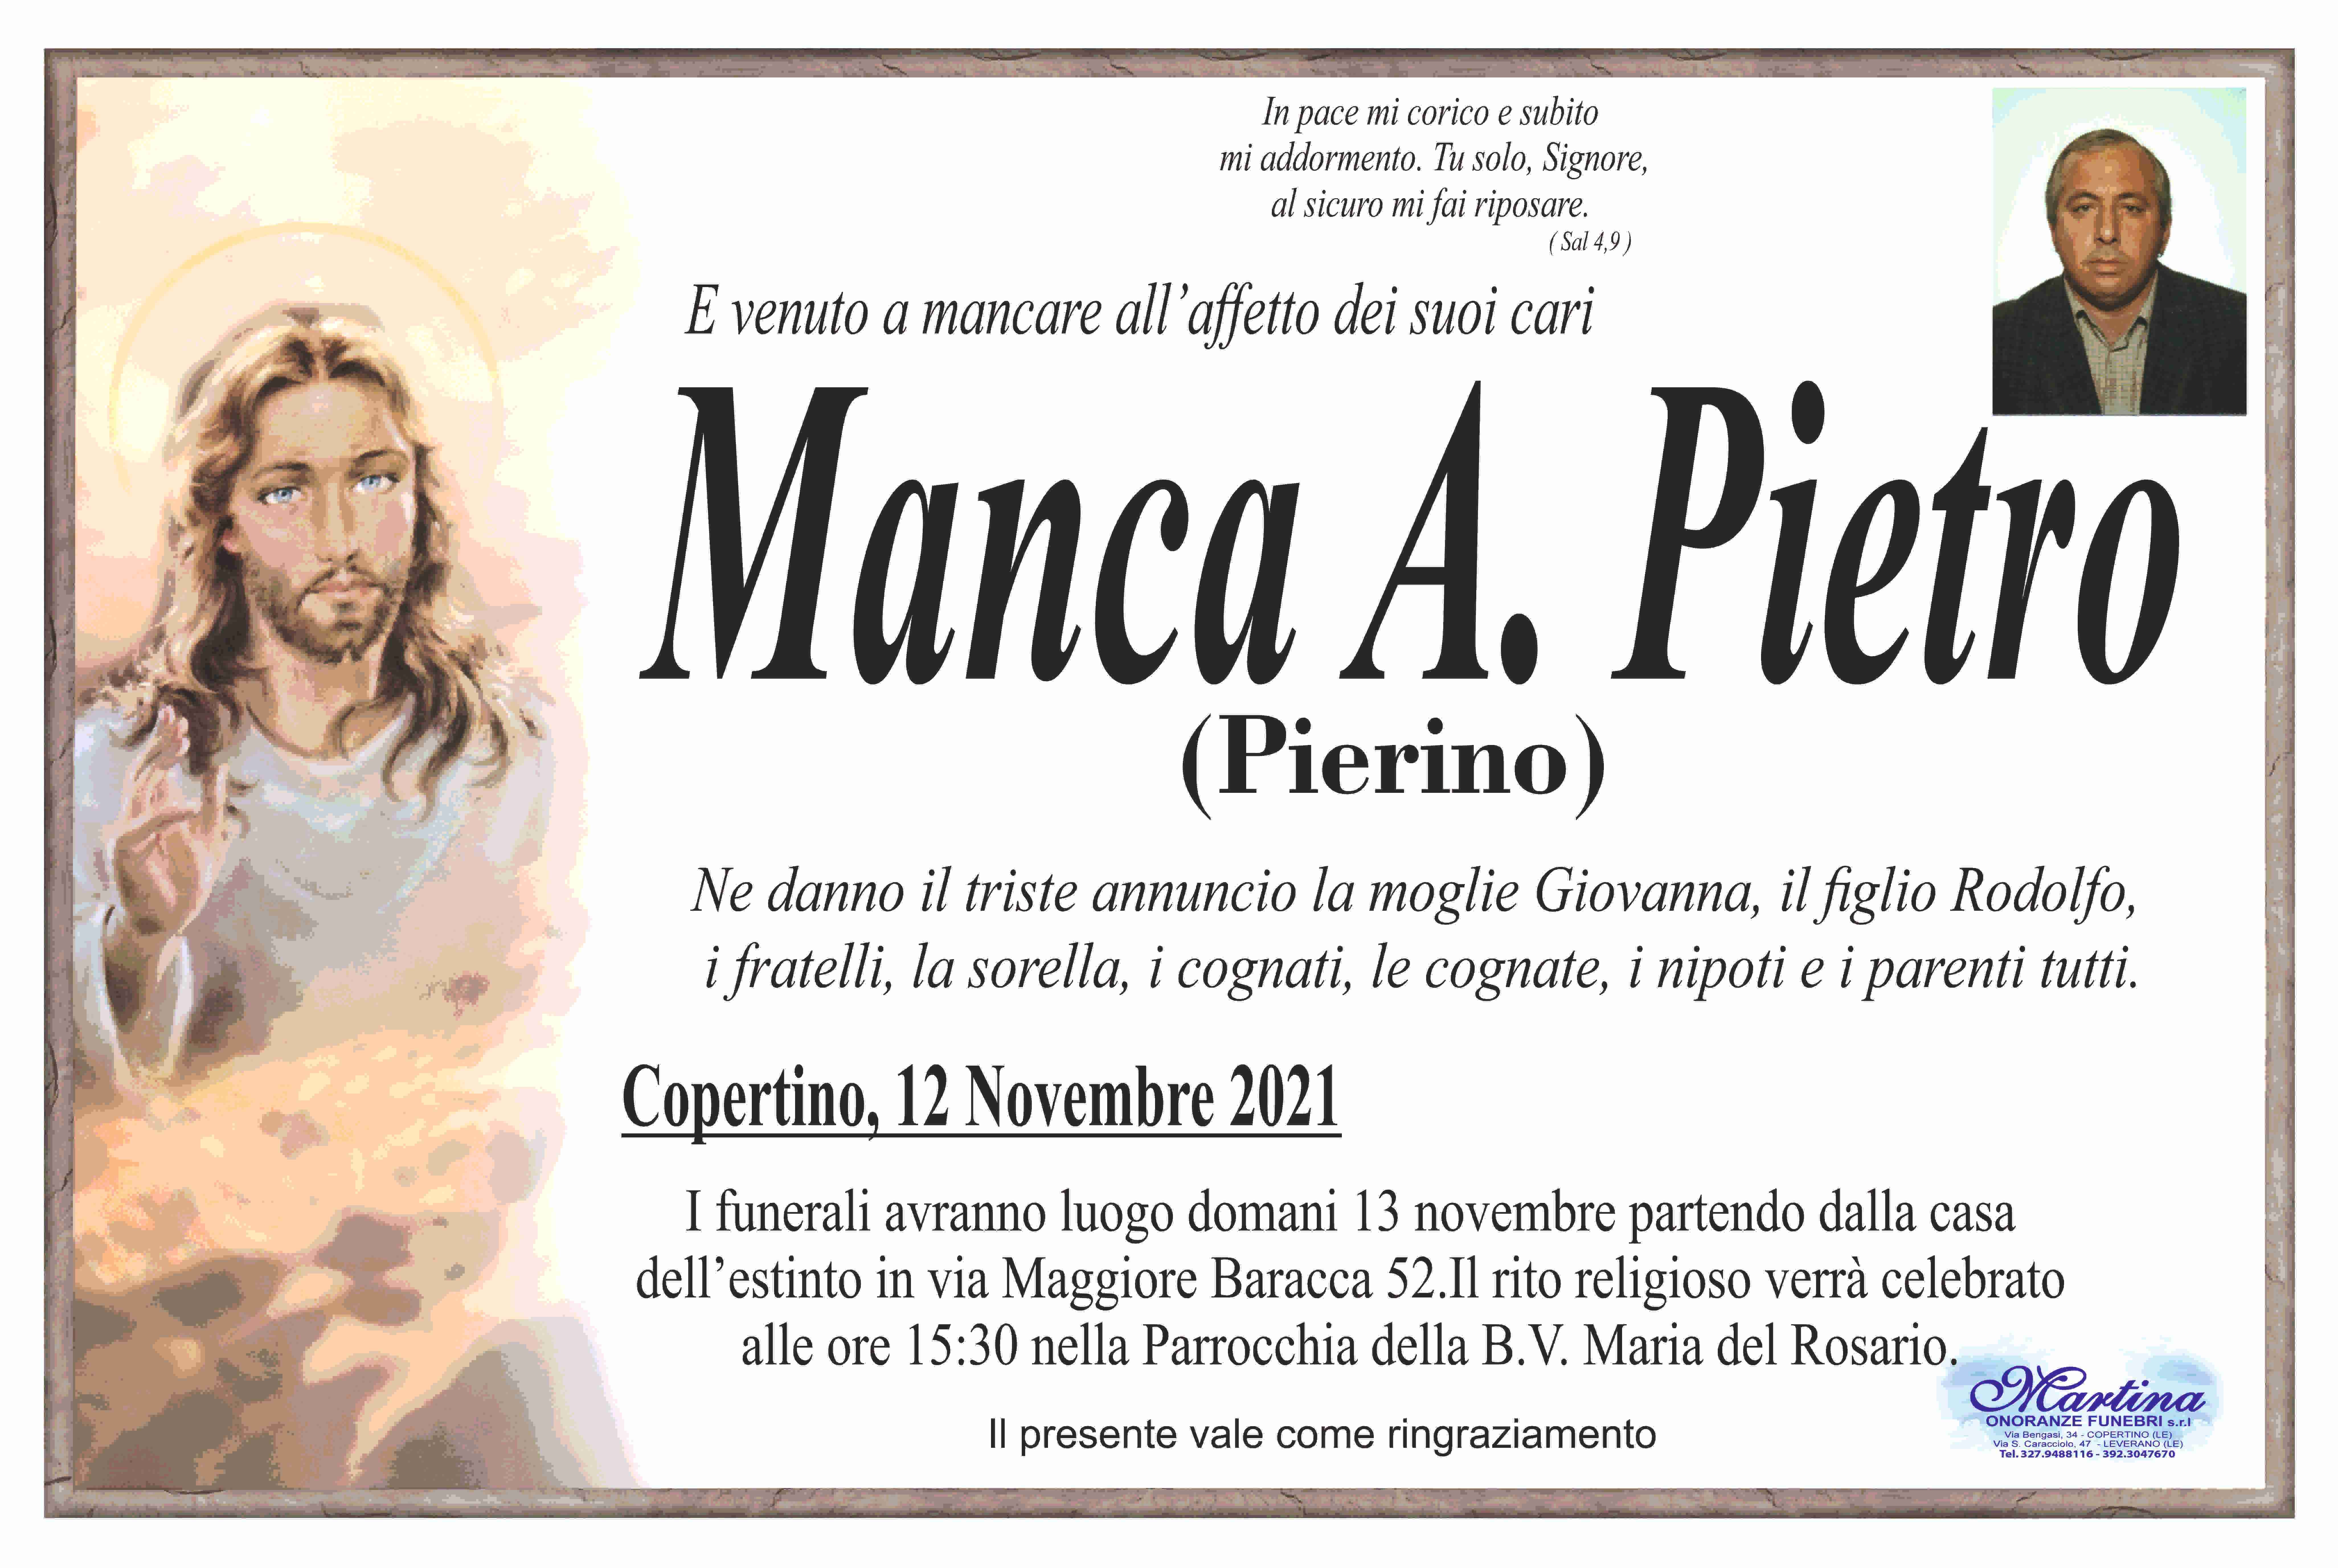 Pietro Manca